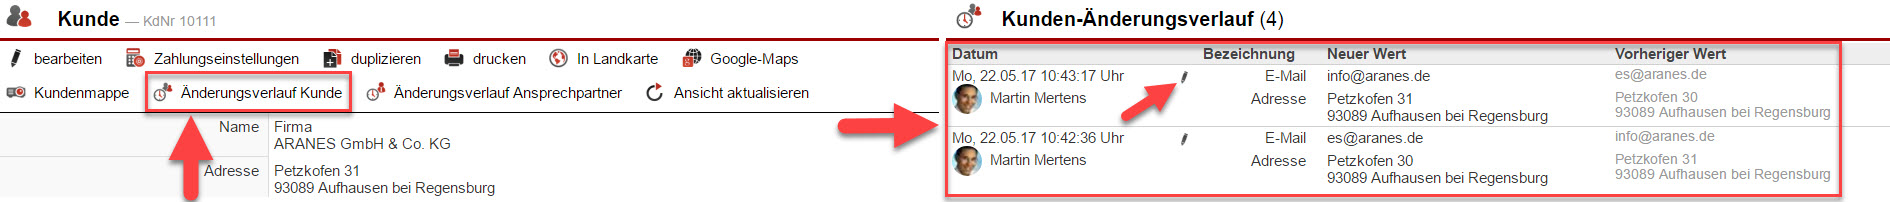 Screenshot Kundenstammdatenmaske mit Markierung auf den Button "Änderungsverlauf Kunde" und dem entsprechenden geöffneten Bereich